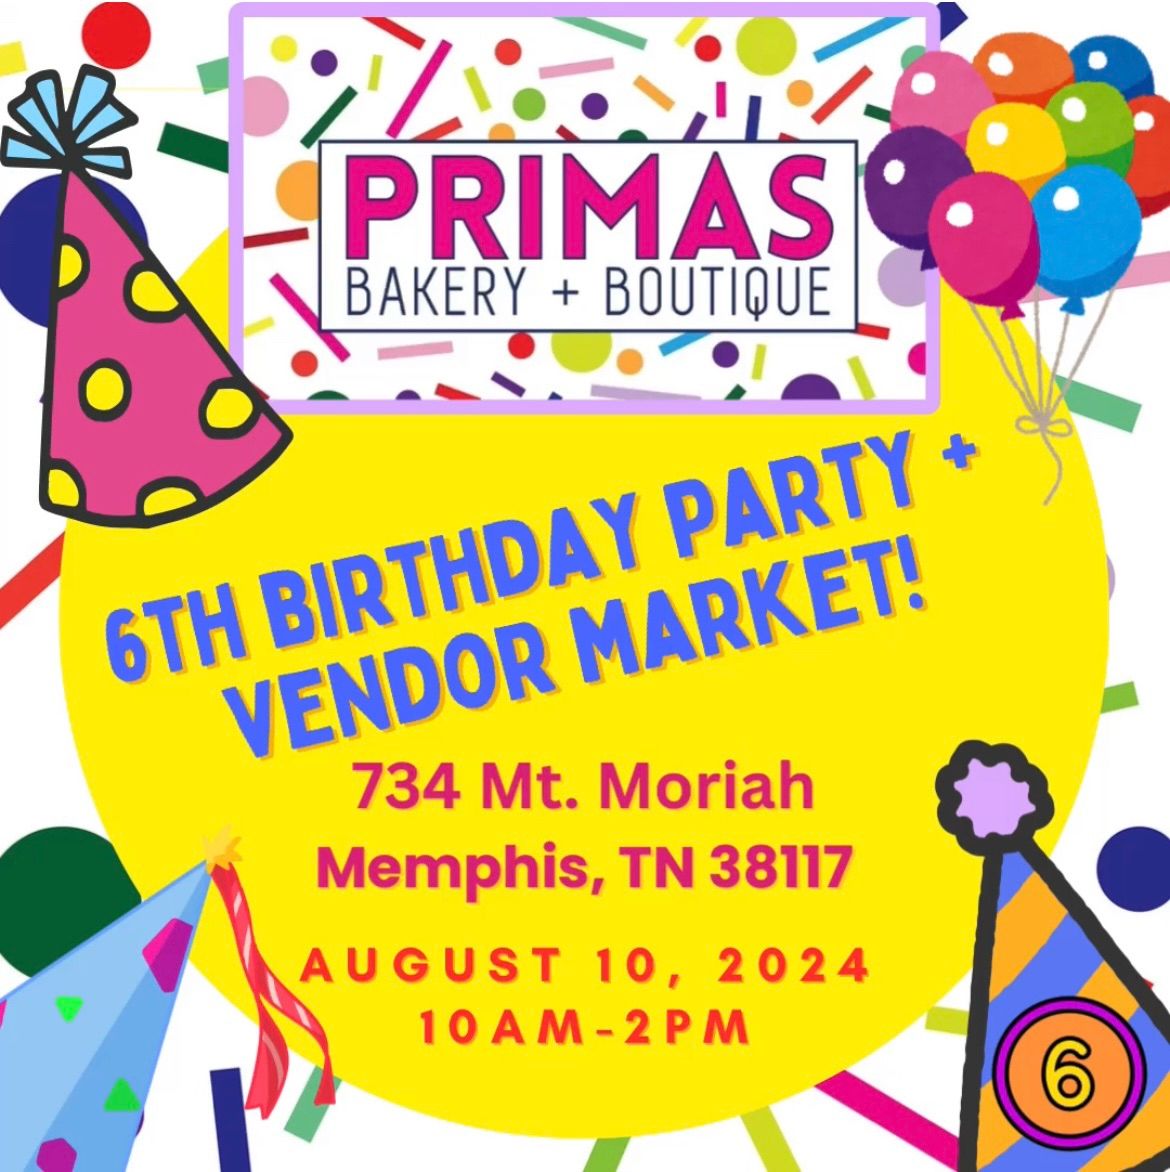 6th Birthday Party + Vendor Market!